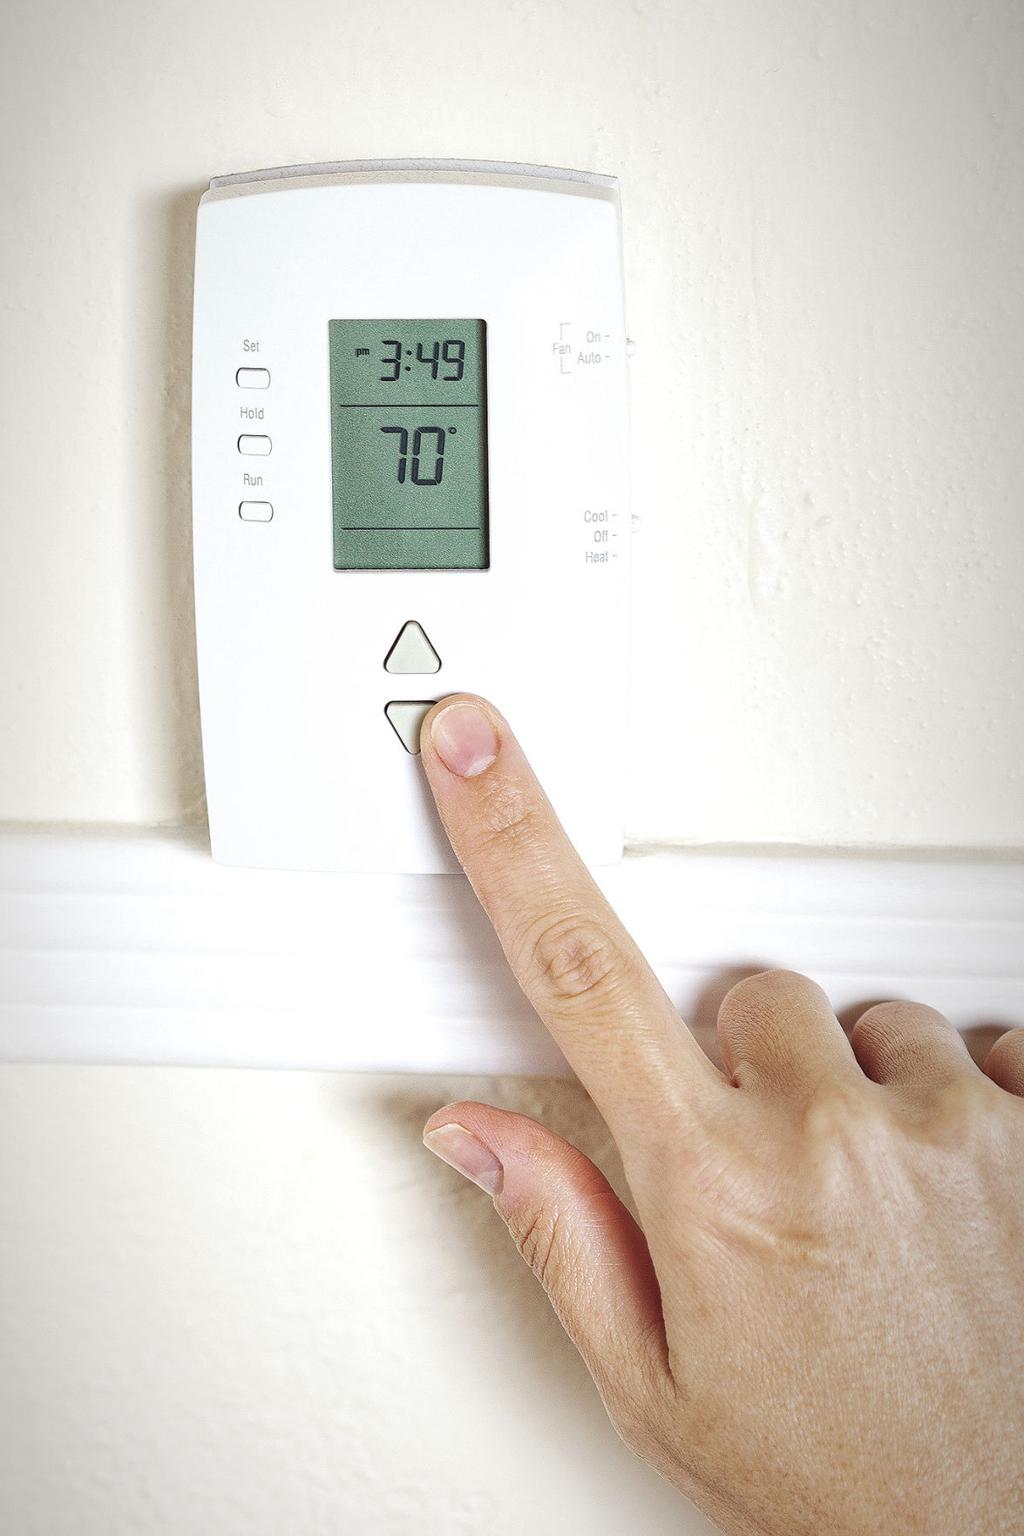 Er det bedre å skru ned termostaten om natten?